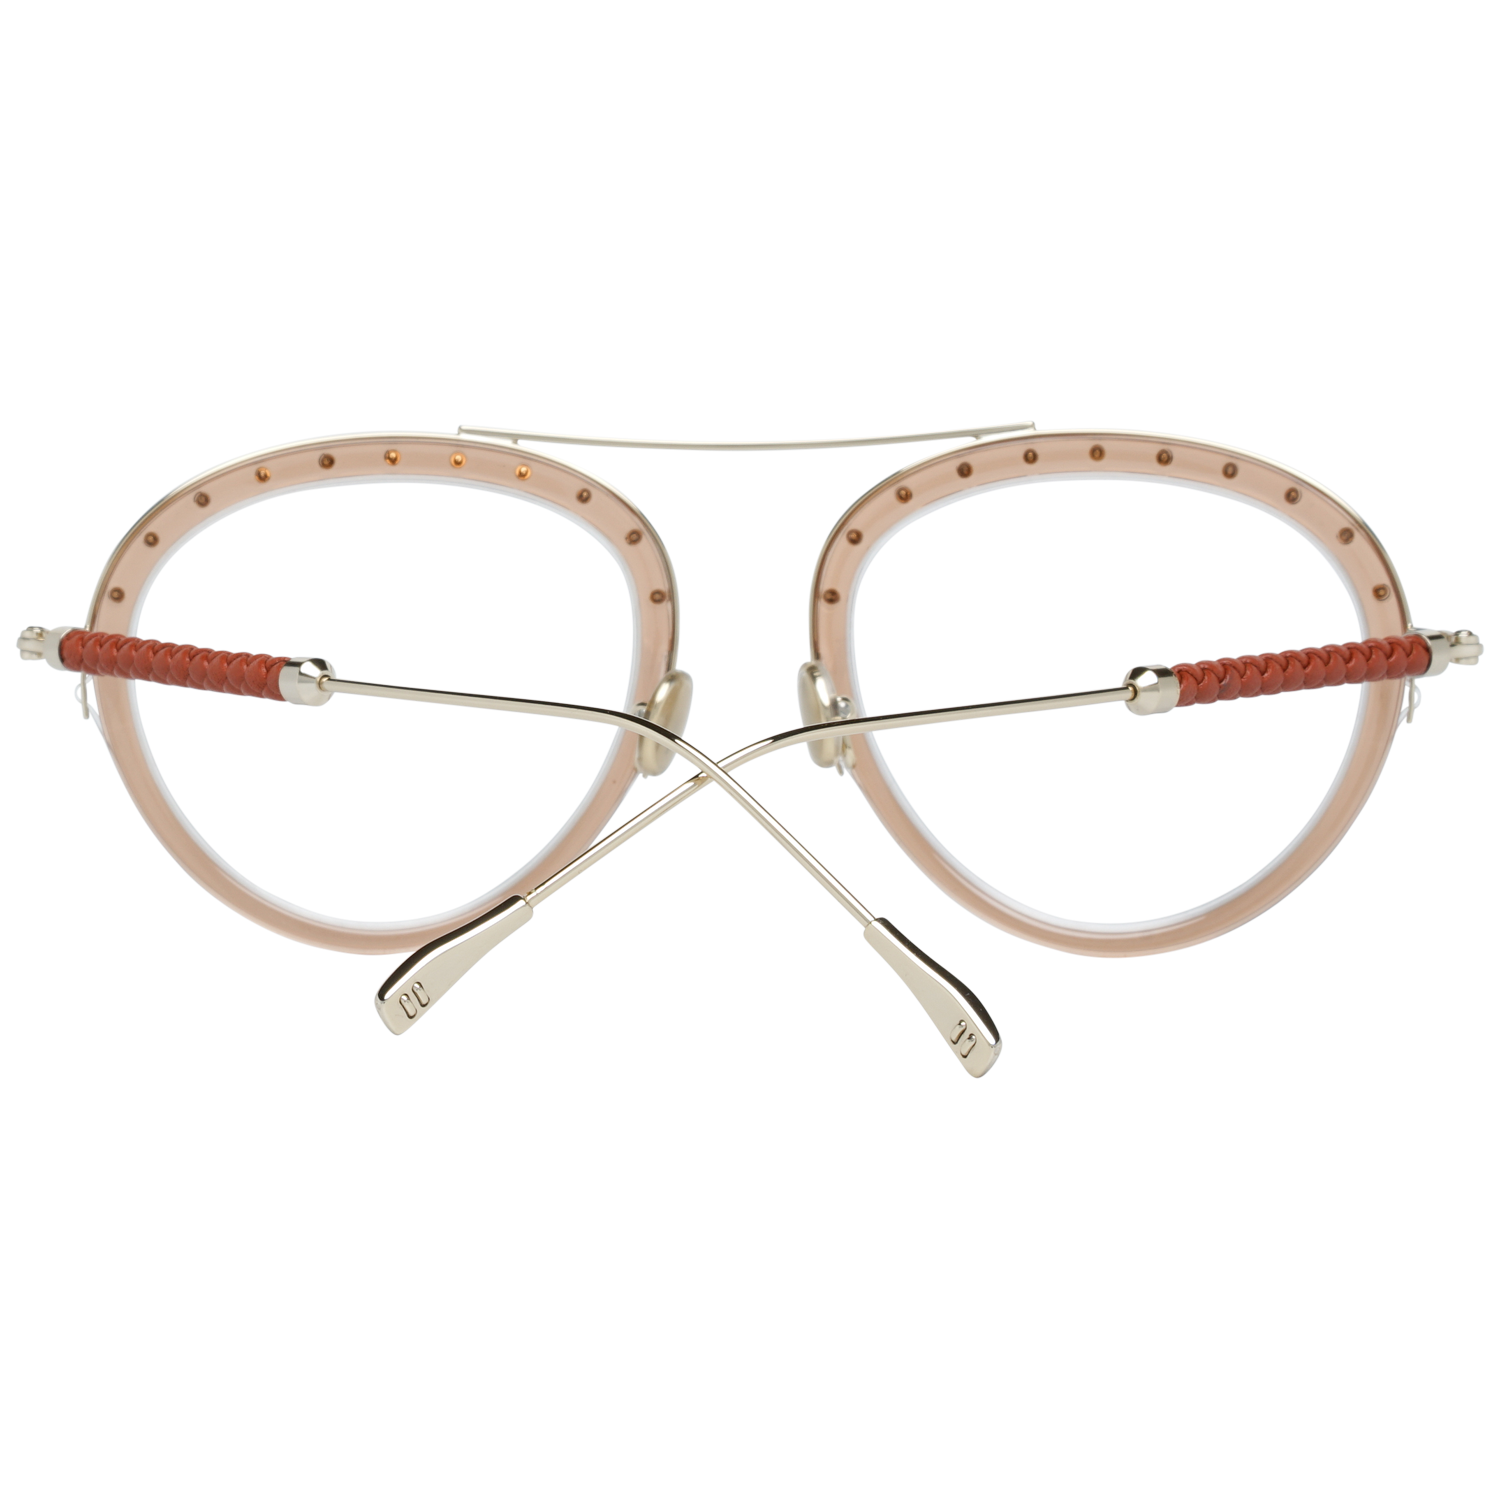 Tods Frames Tods Glasses Women's Brown Oval Frames TO5211 045 52mm Eyeglasses Eyewear UK USA Australia 